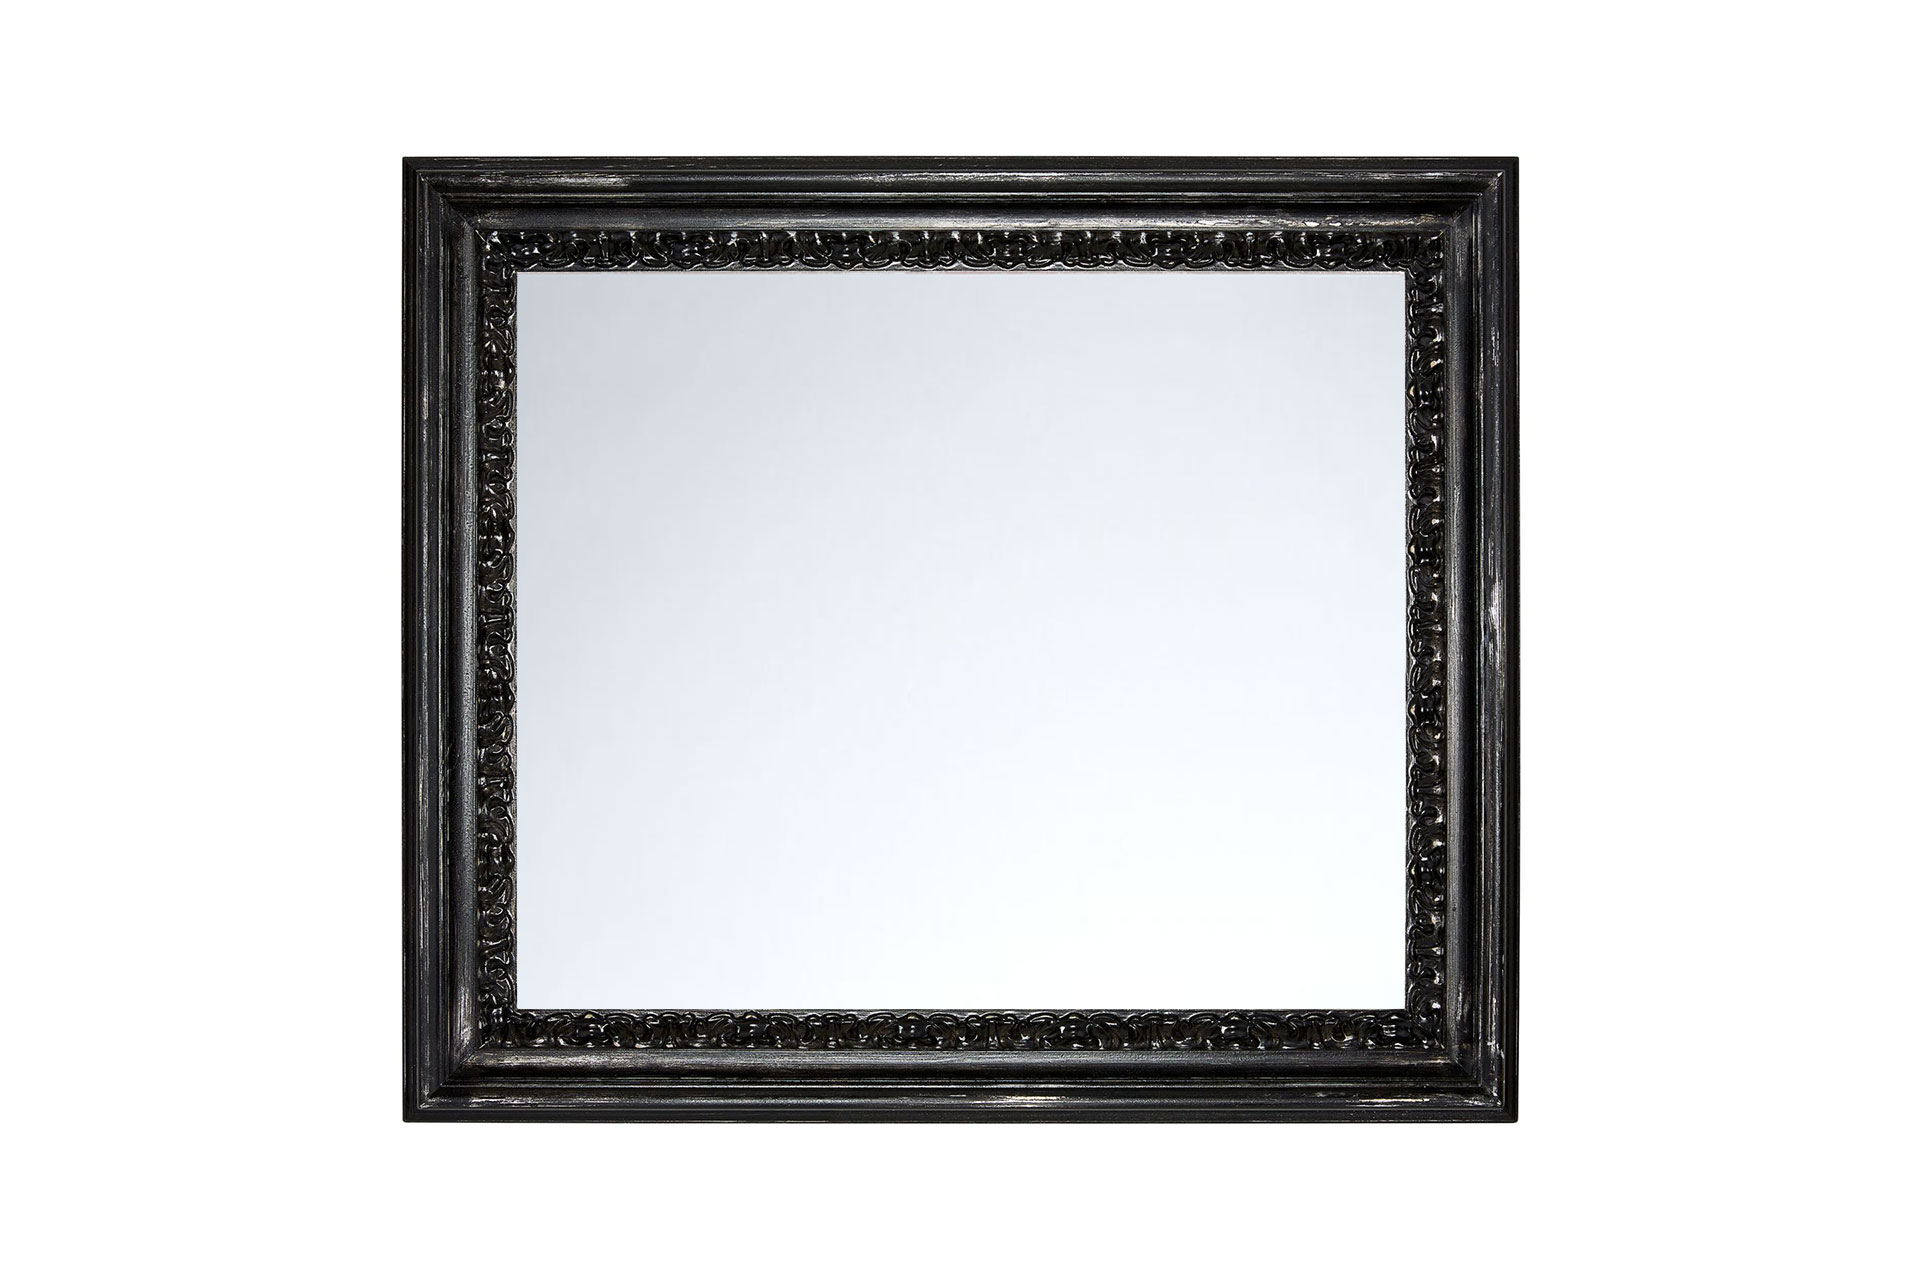 Wandspiegel Shabby-Chic Modell Lens, rechteckig, Farbe: Silber/Schwarz, Shabby-Chic, Frontansicht quer Rahmen mit Spiegel